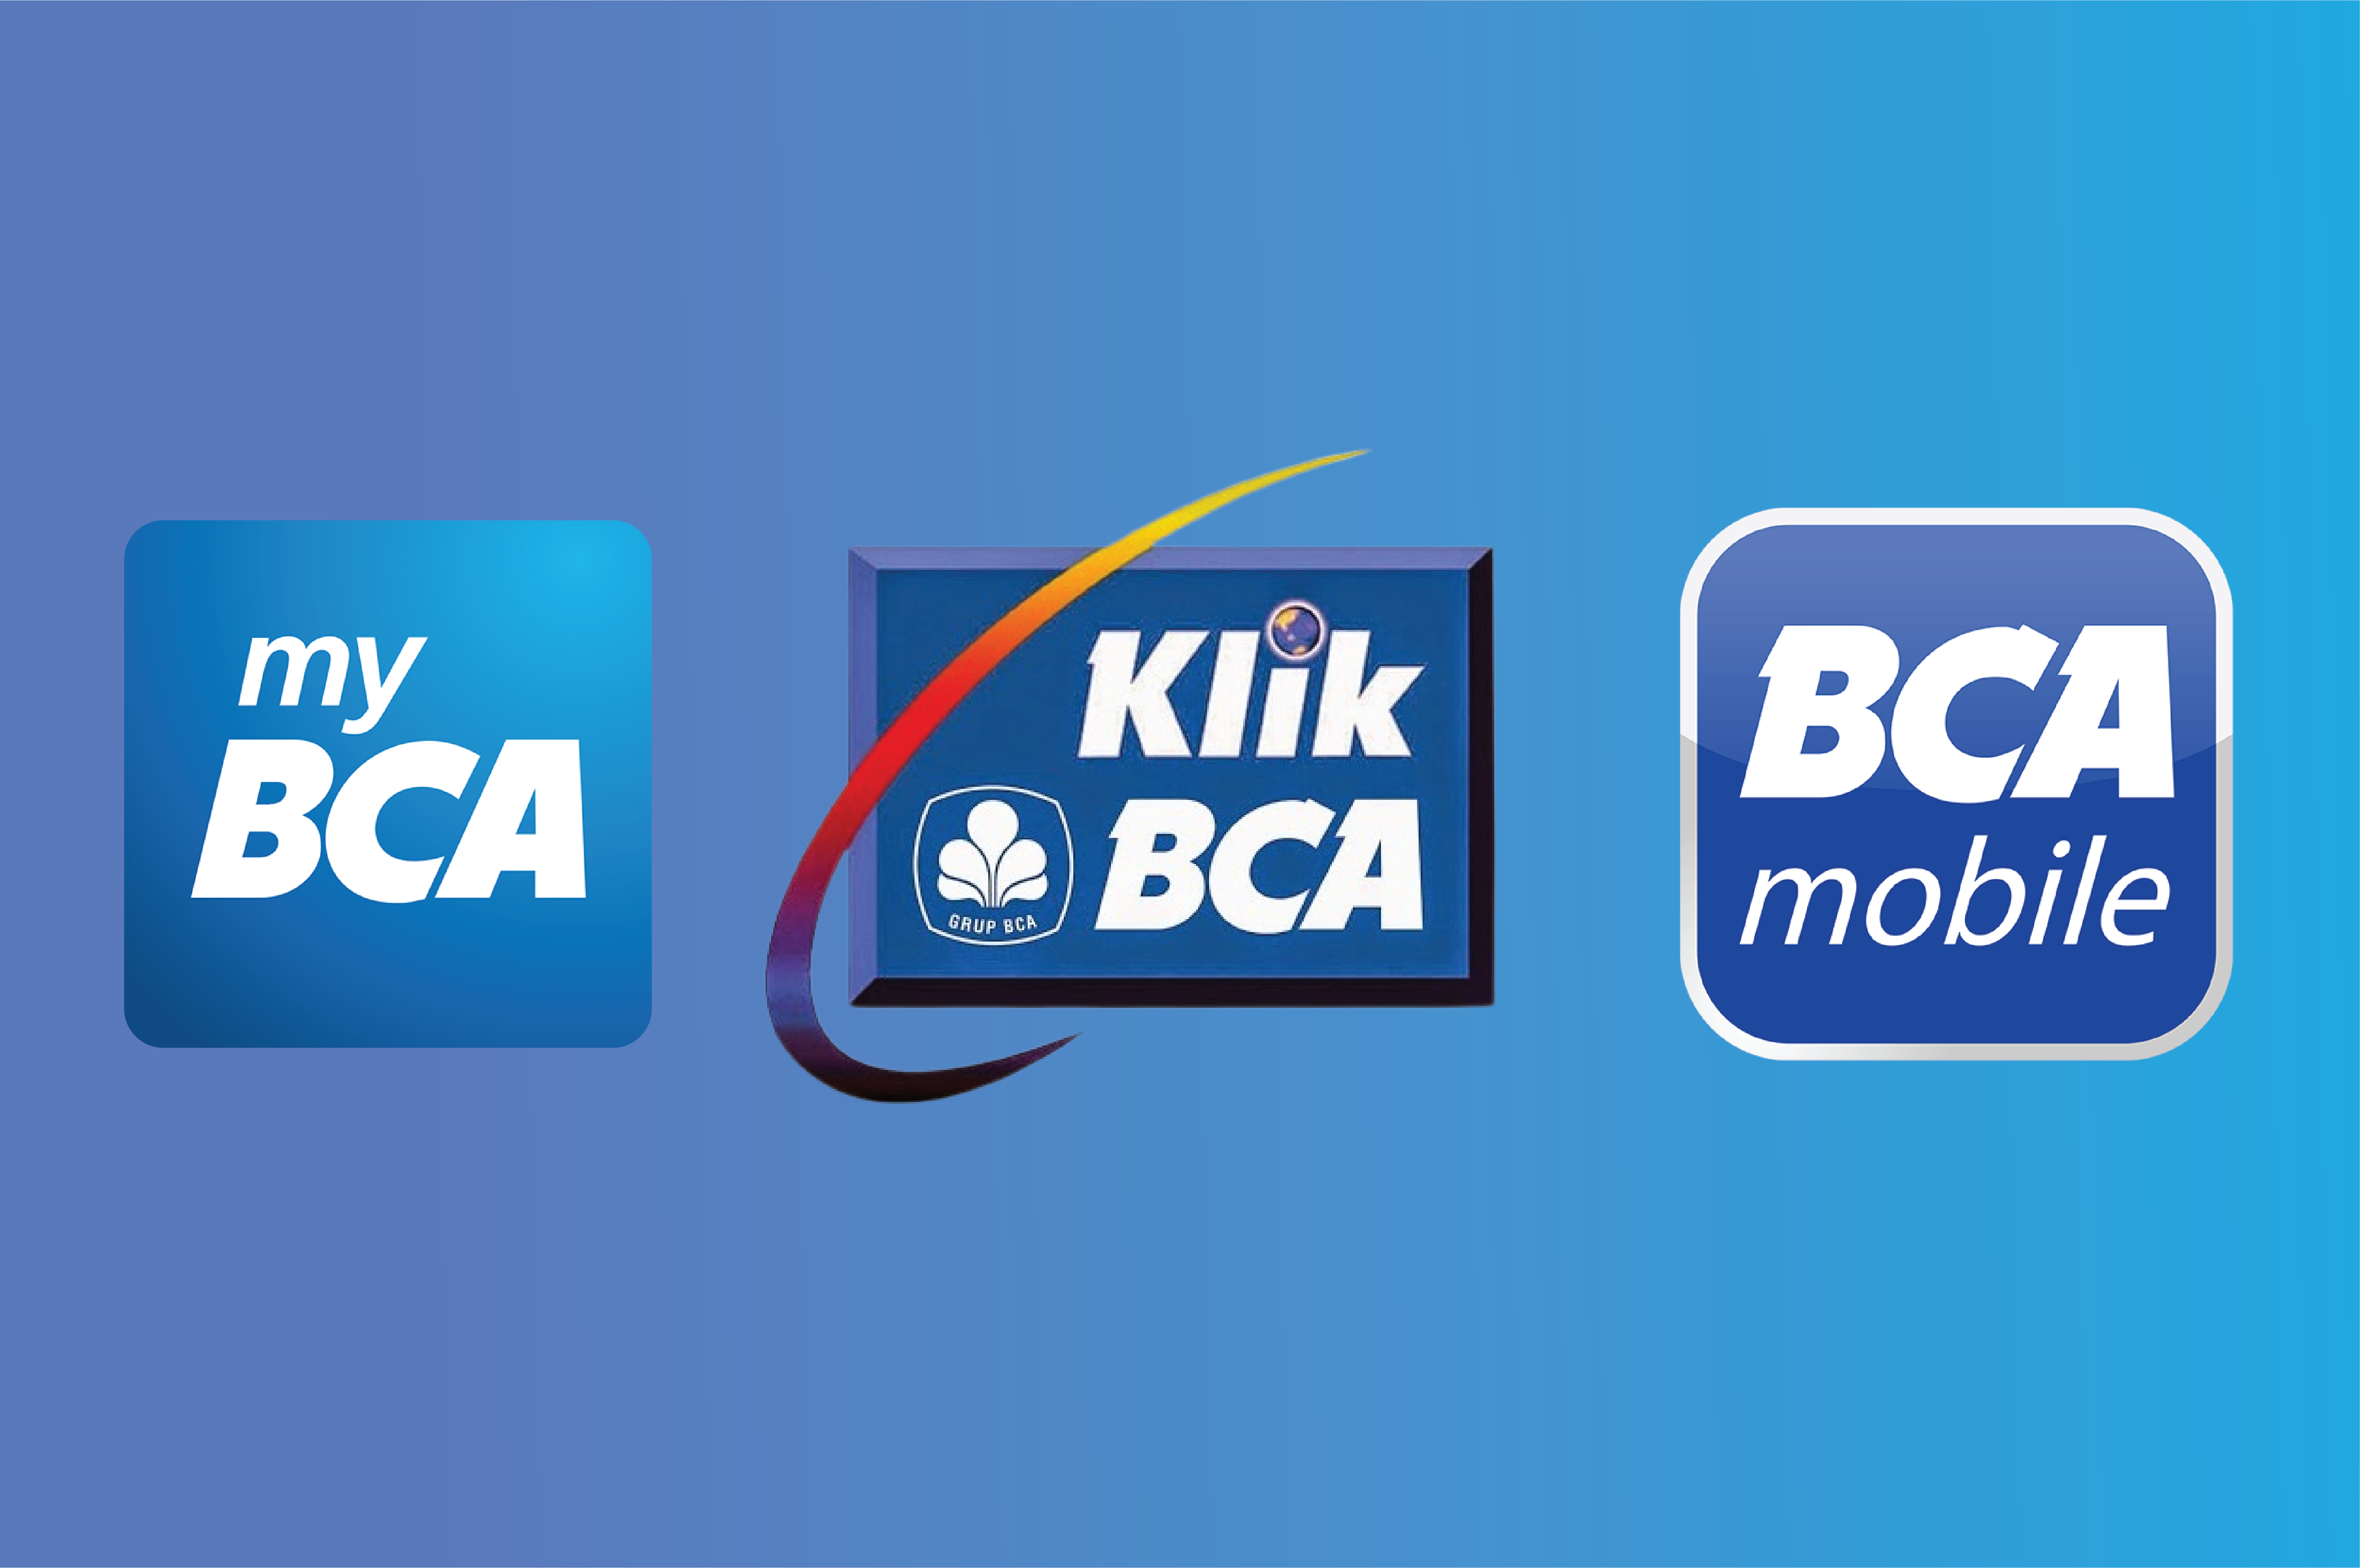 Cari Tau Perbedaan BCA Mobile, My BCA, dan Klik BCA untuk Mempermudah Transaksi